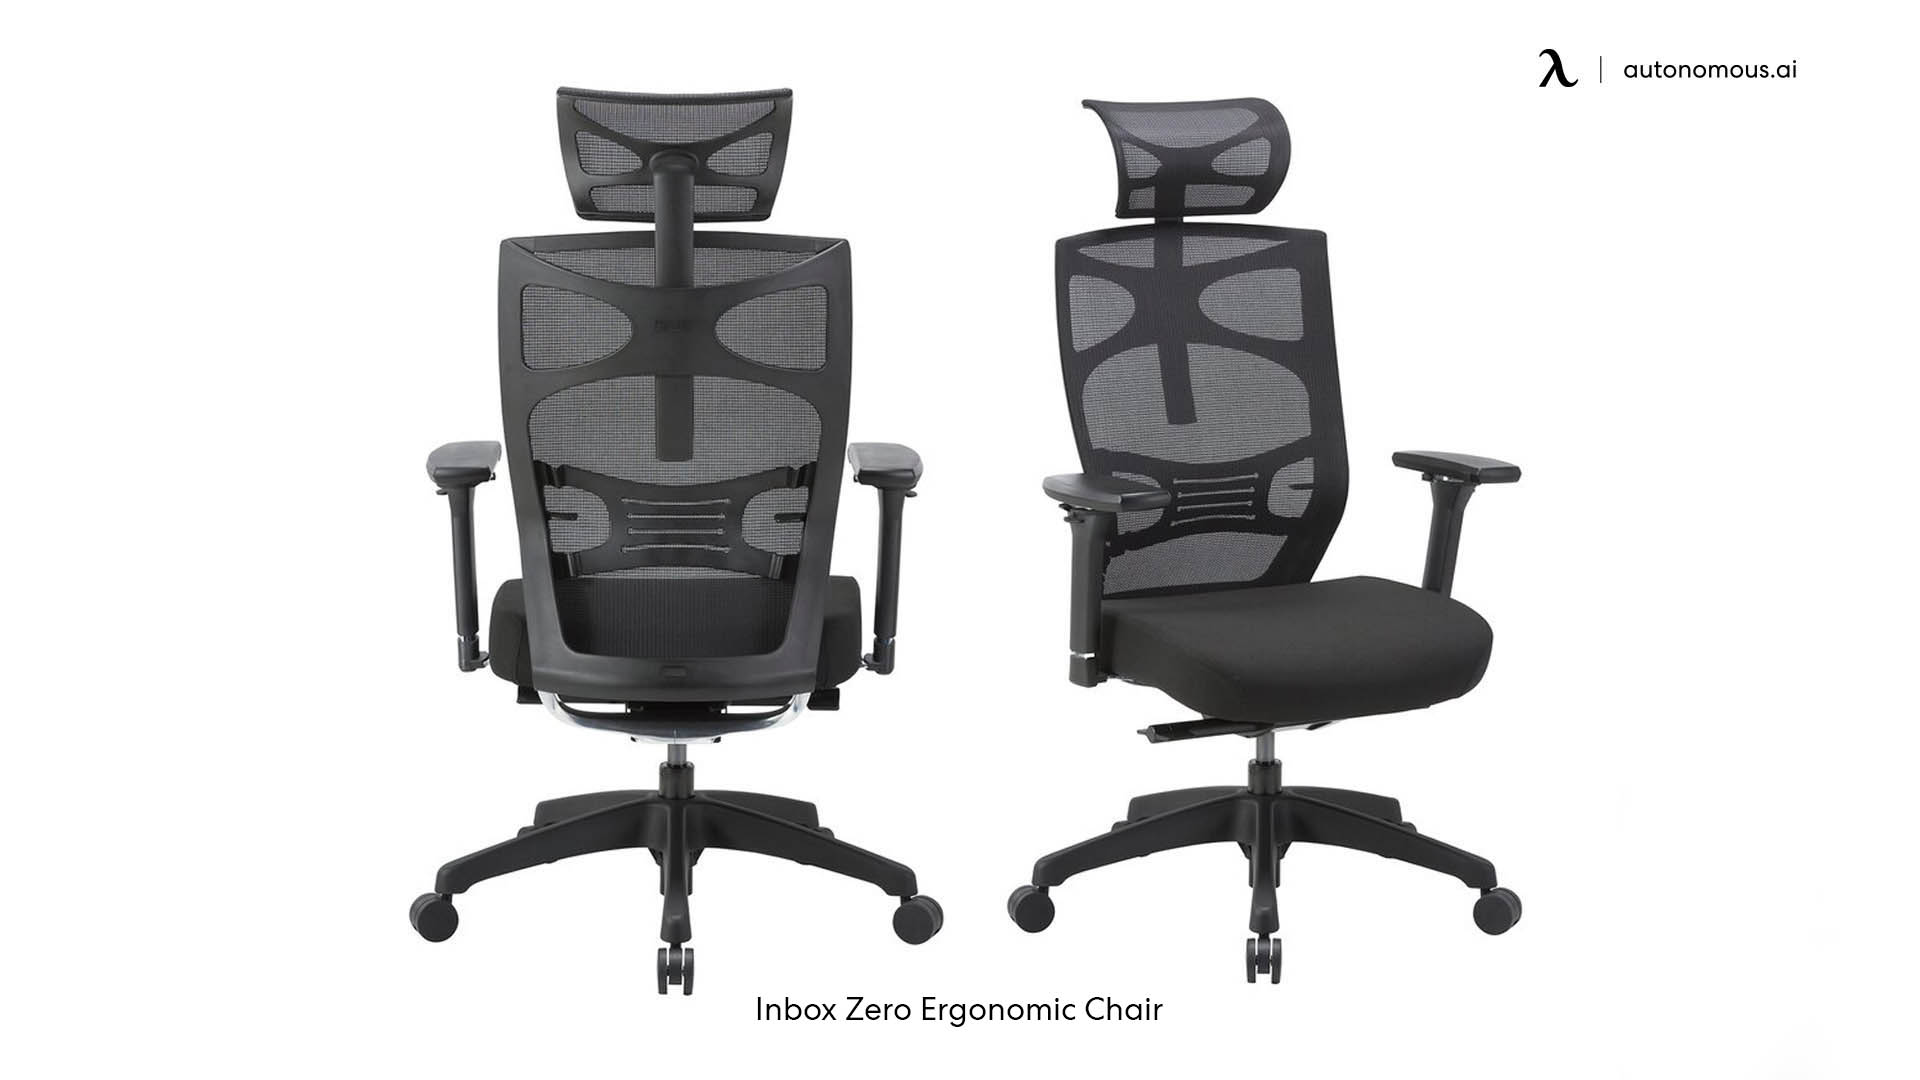 Inbox Zero women's office chair